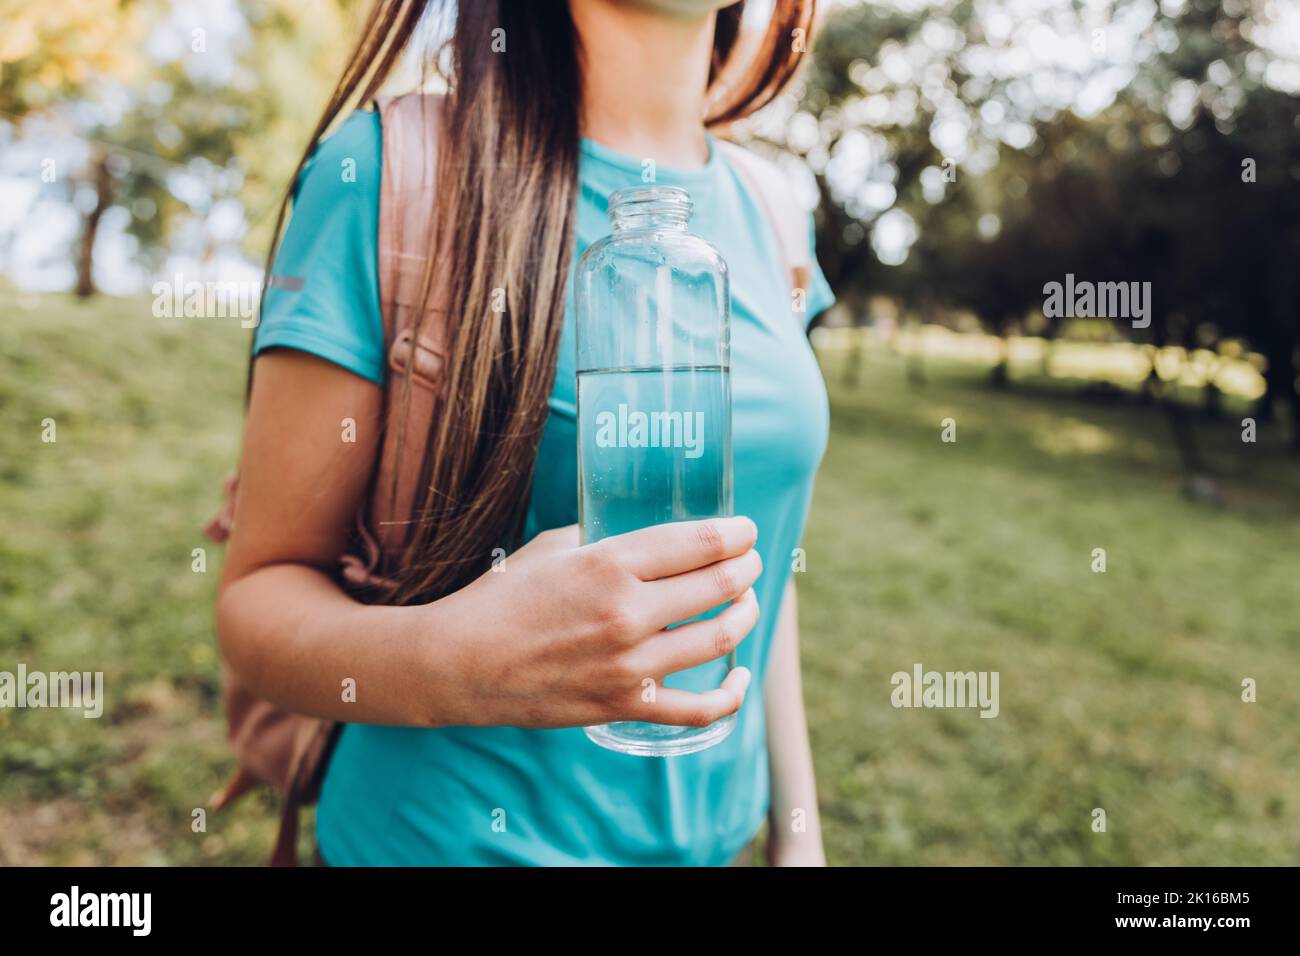 Fille méconnaissable portant un t-shirt turquoise et tenant une bouteille de verre avec de l'eau dans la nature. Ressources naturelles Banque D'Images